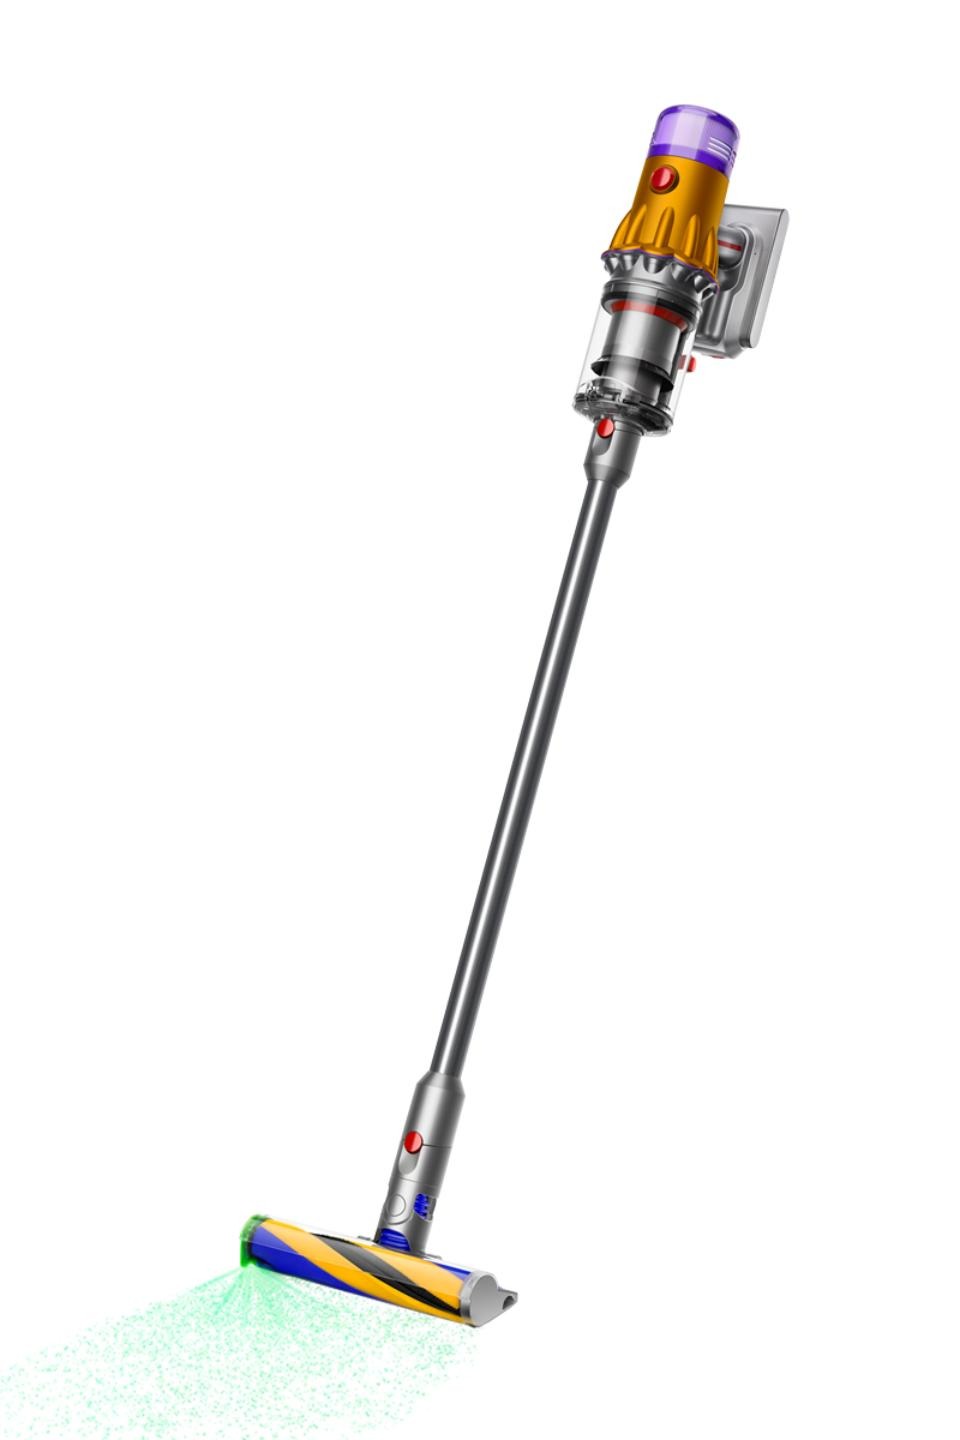 Dyson V12 Detect Slim (Yellow/Nickel) cordless vacuum $479.99